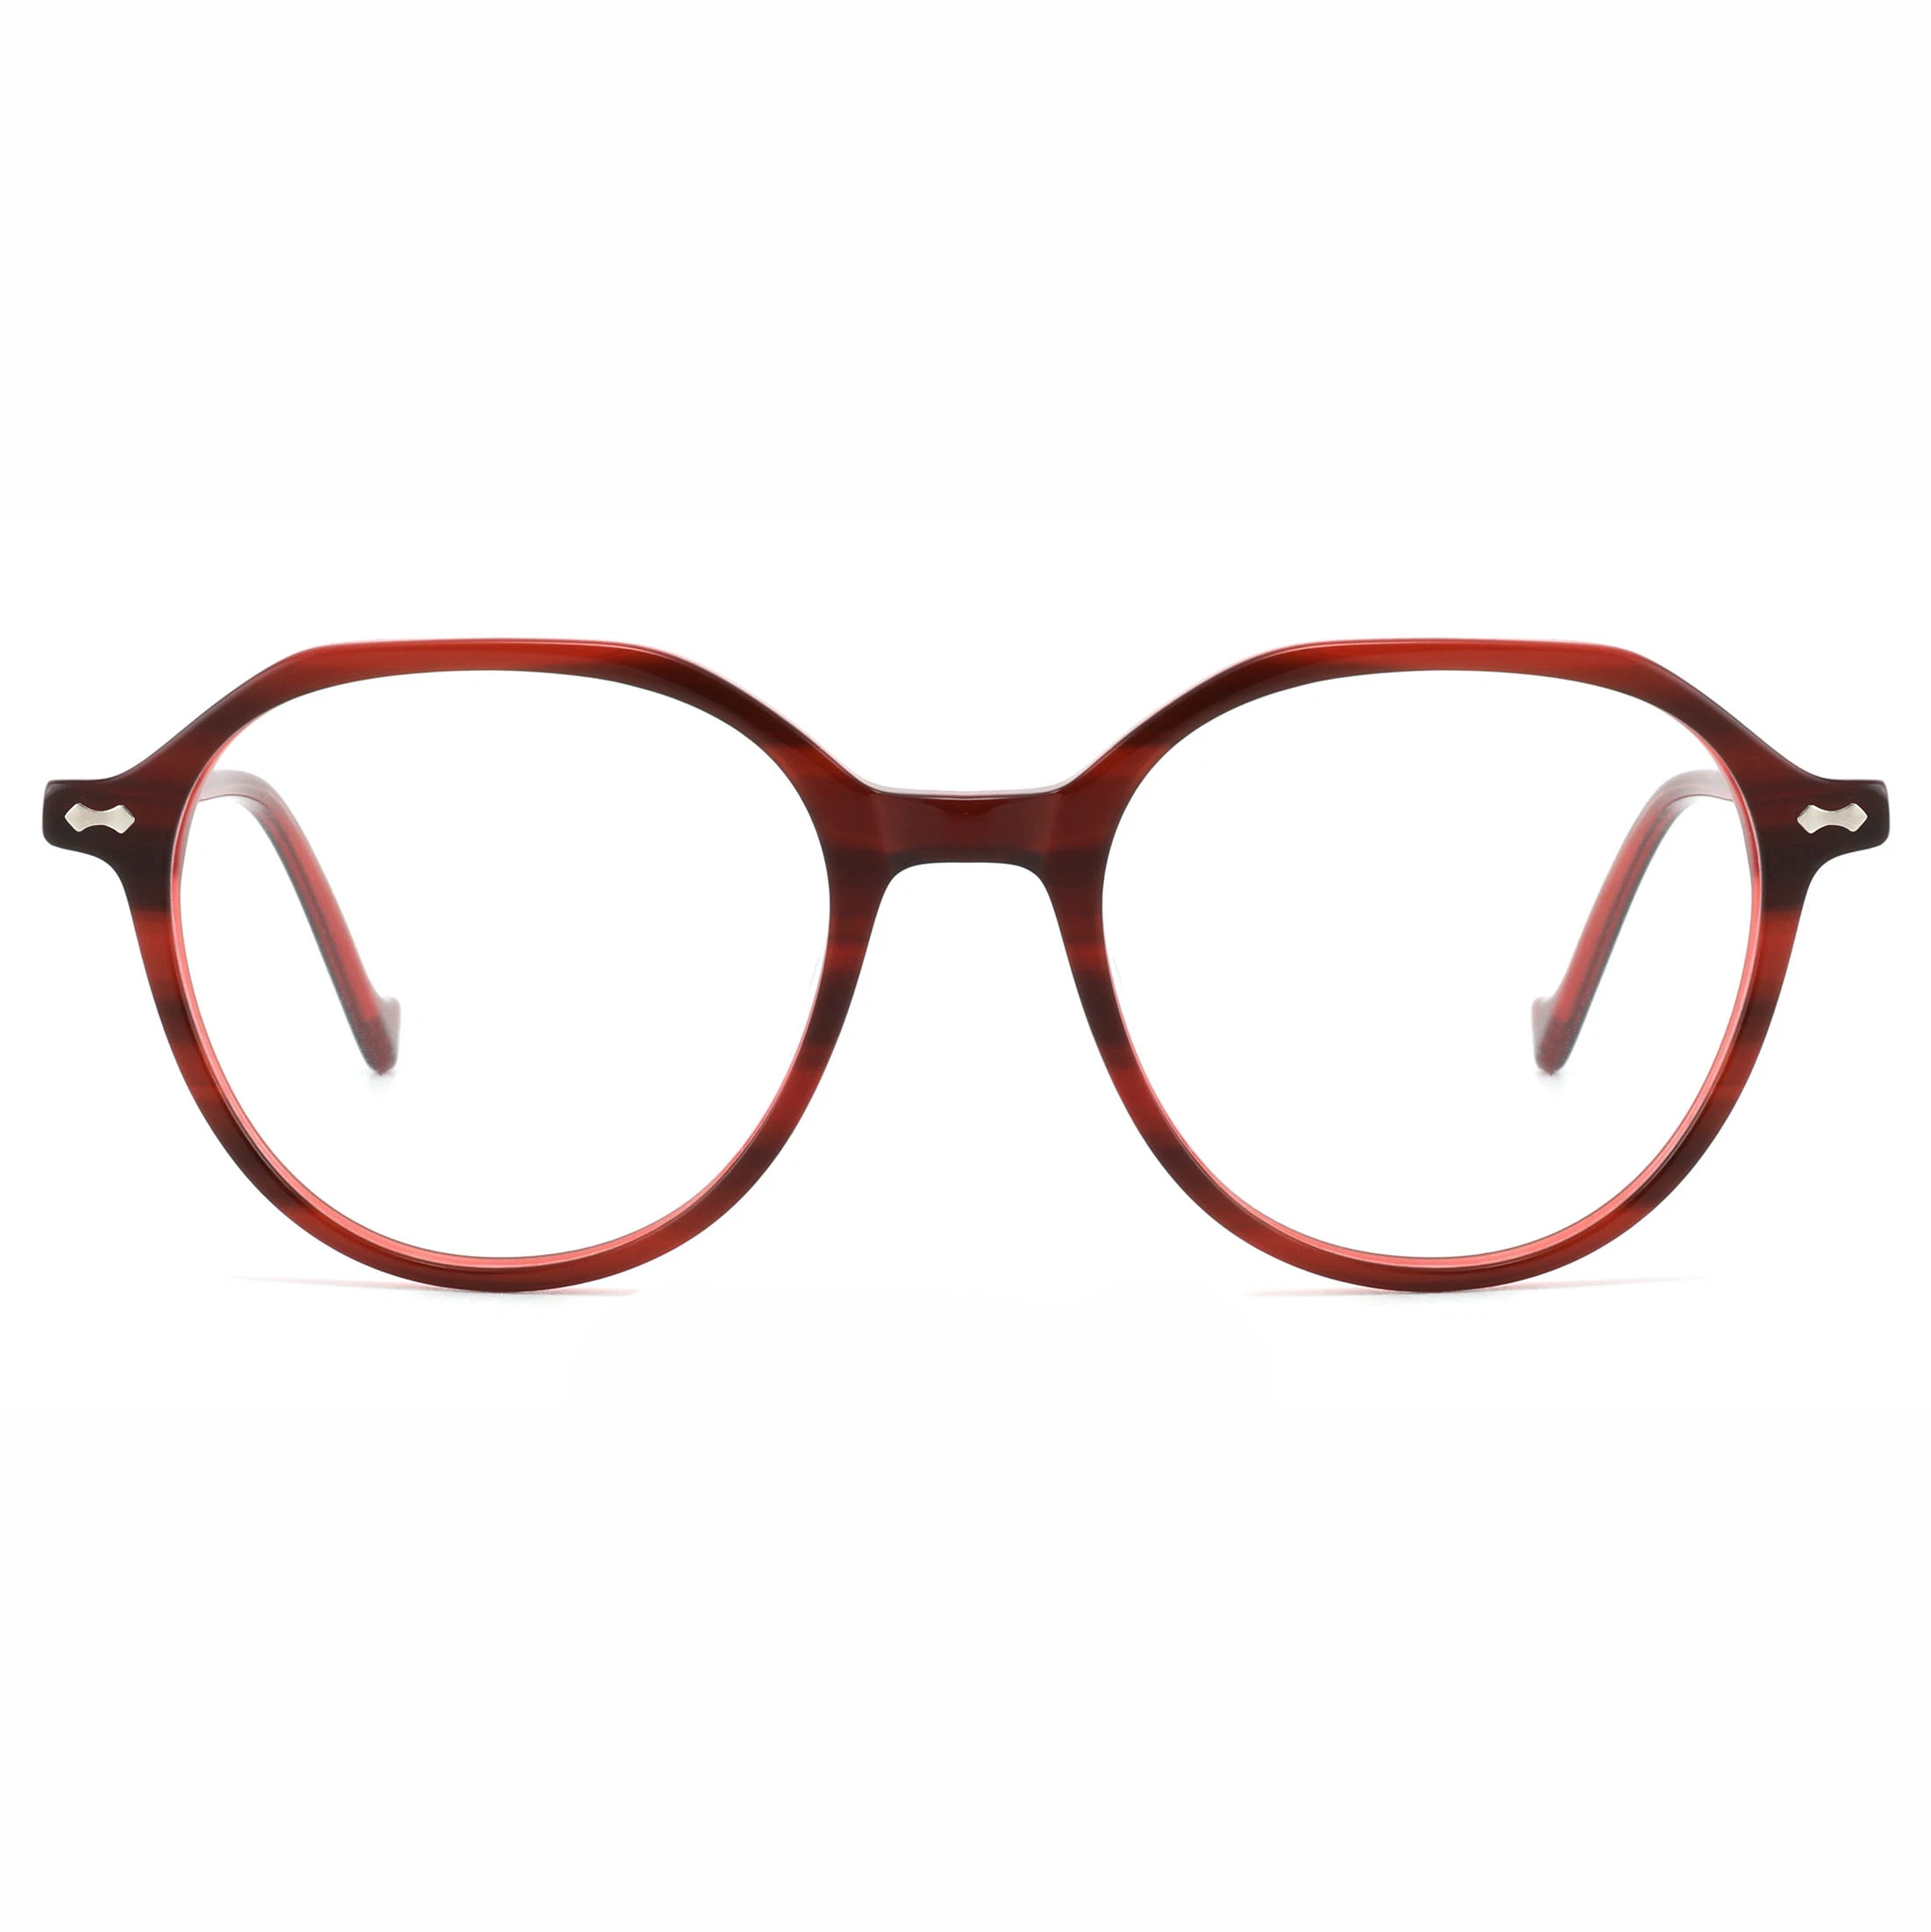 Fashionable Style Spectacle Round Acetate Demi Eyewear Retro Vintage Optical Frames